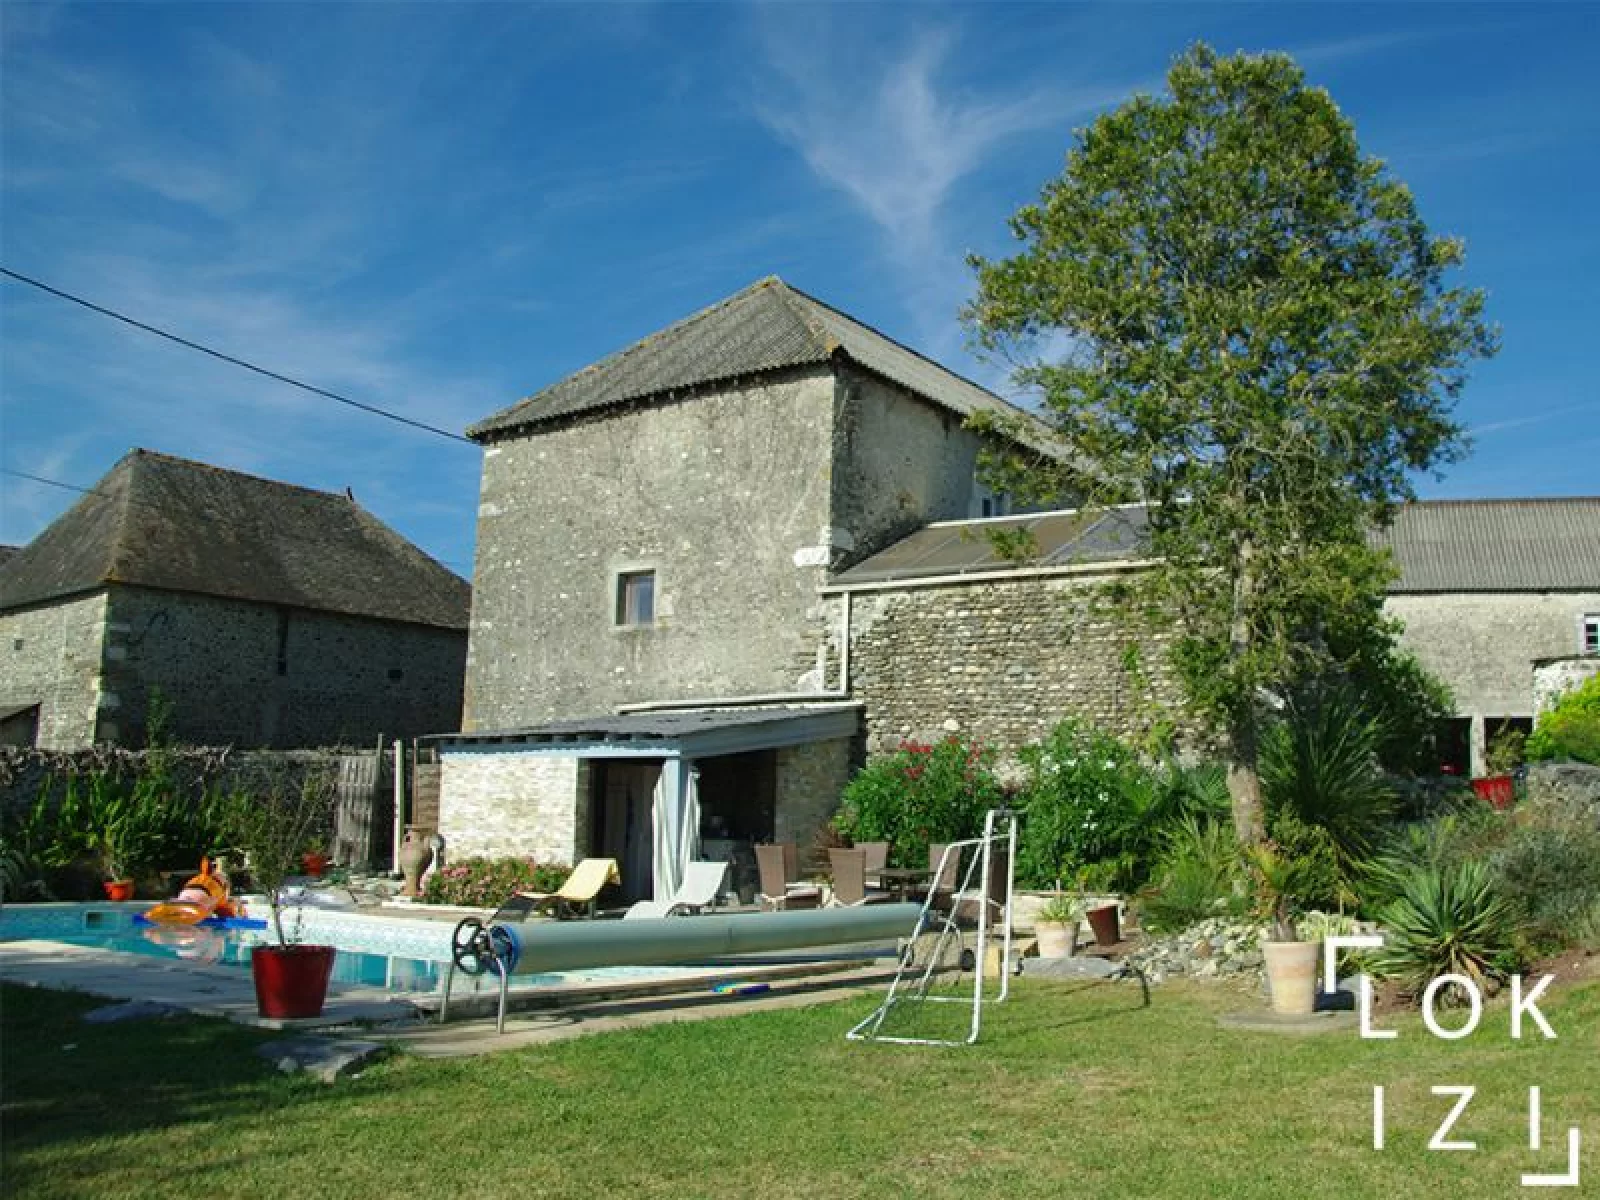 Location maison meublée 235m², 4 chambres, jardin et piscine (Bordes - Pau 64)